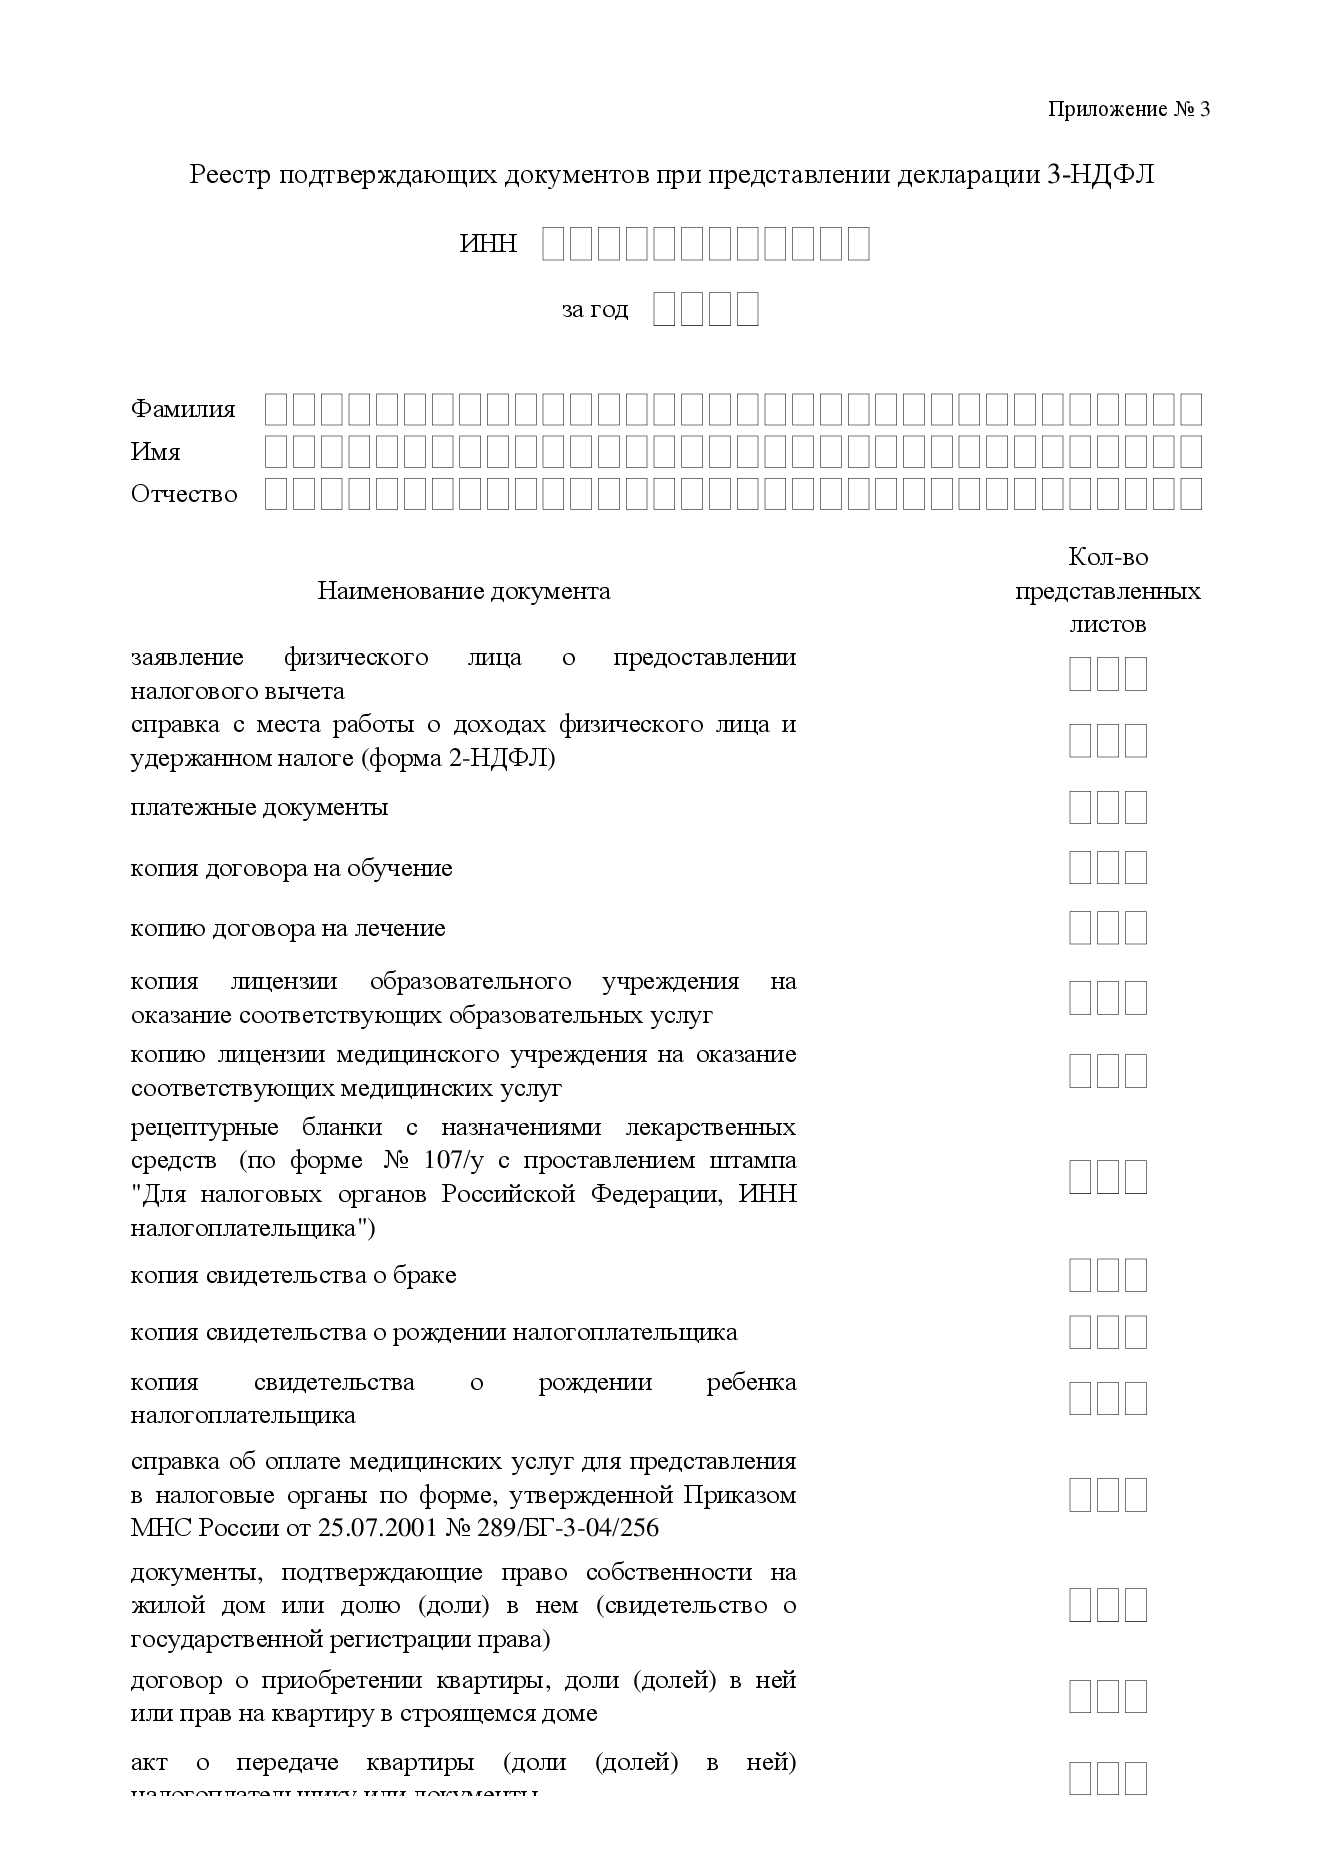 Реестр подтверждающих документов к декларации 3-НДФЛ | Образец - бланк -  форма - 2023